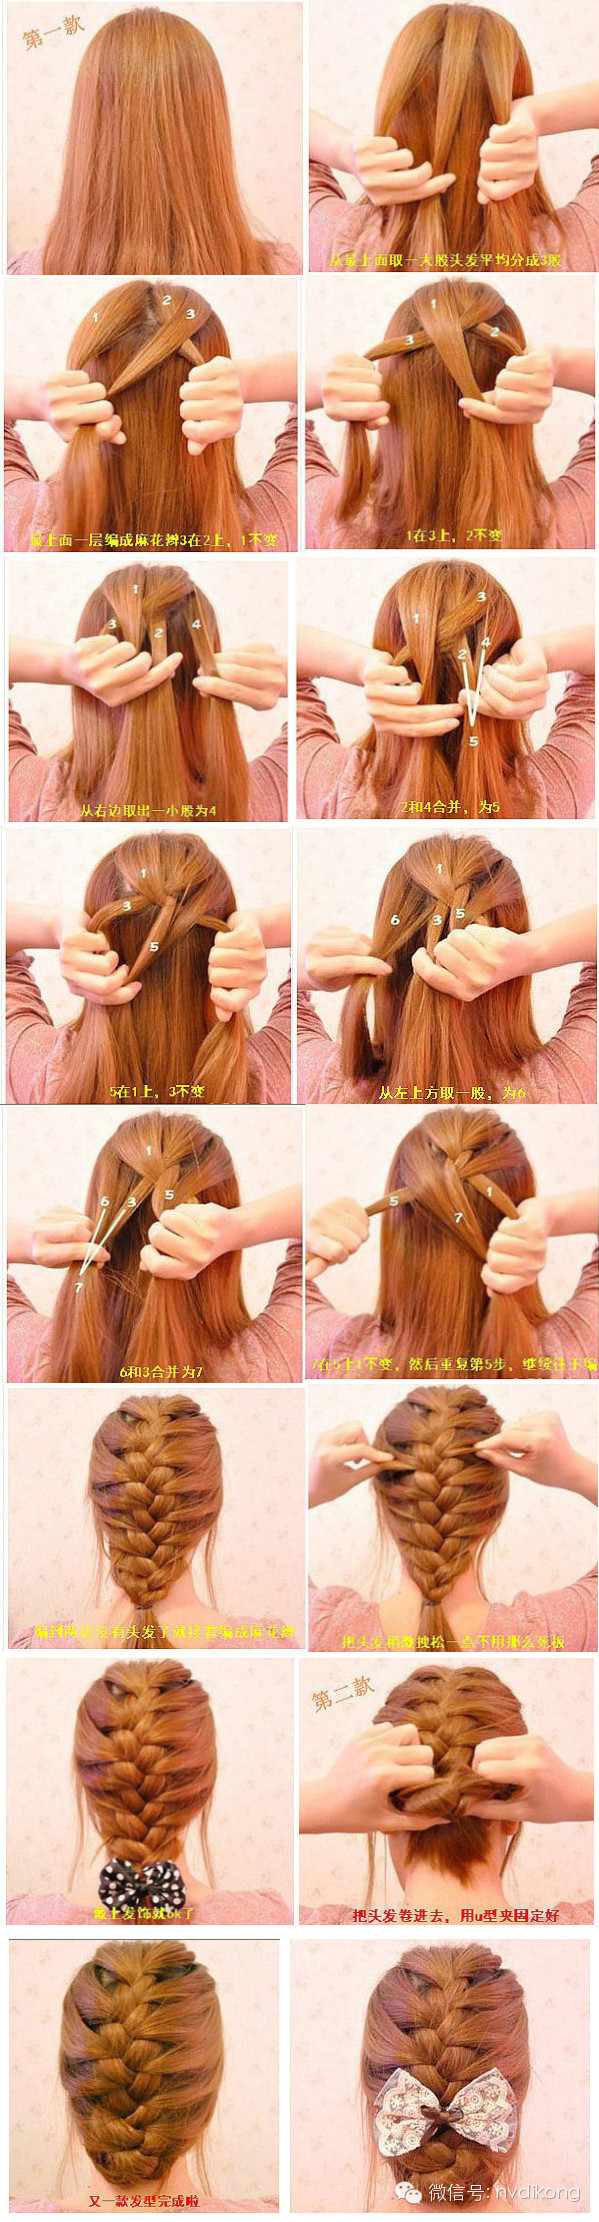 懒人扎出简单漂亮头发三十种漂亮扎头发的方法三十种简单扎头发图解